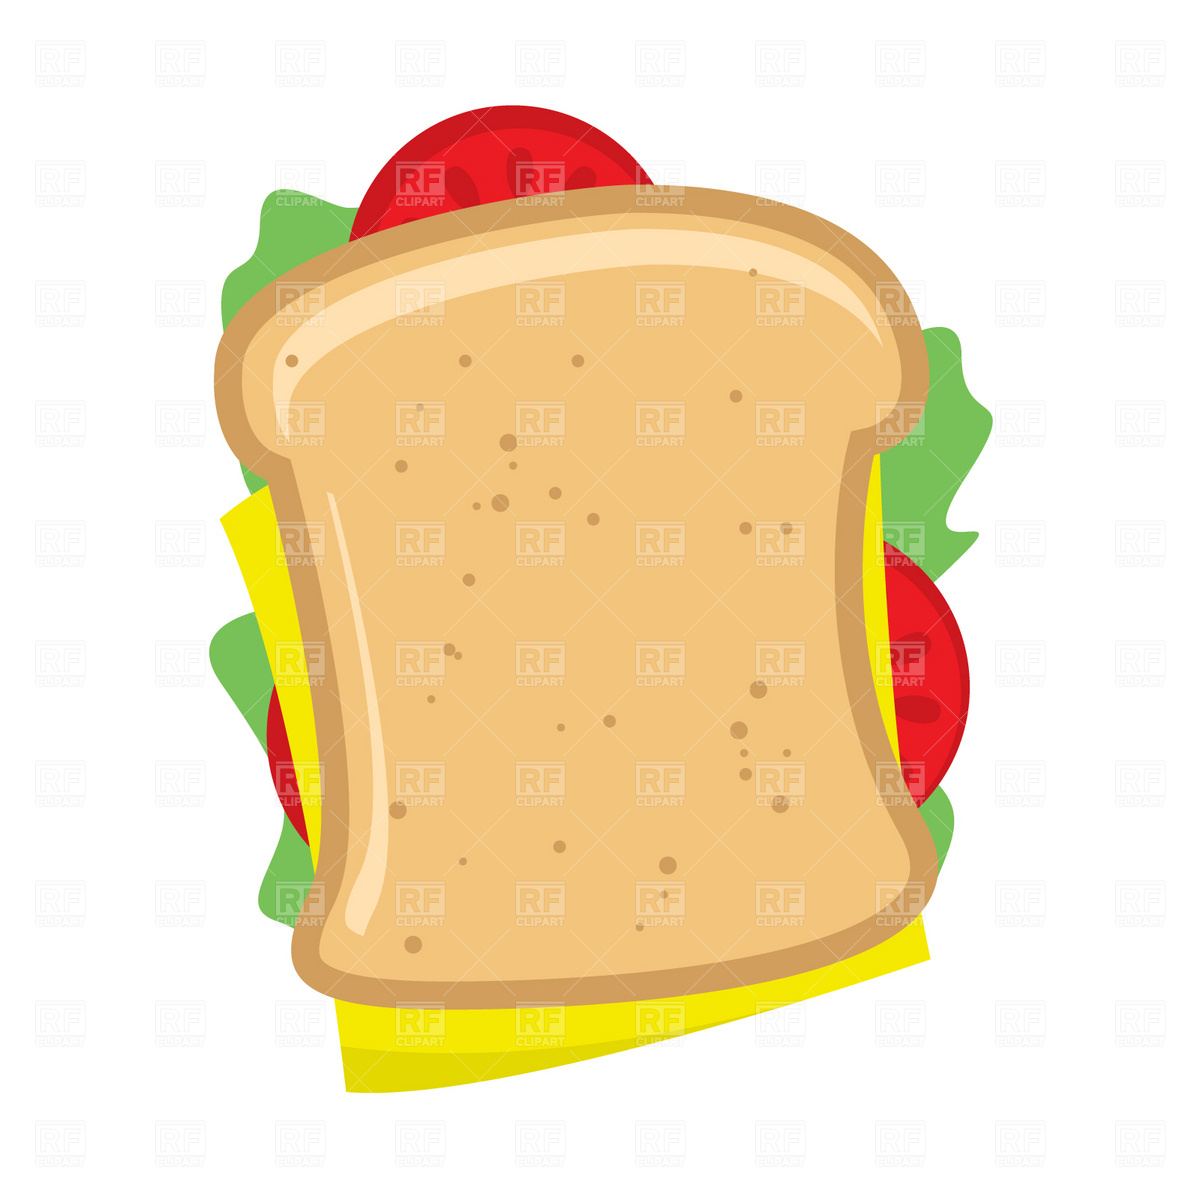 Sandwich Clipart - Tumundografico